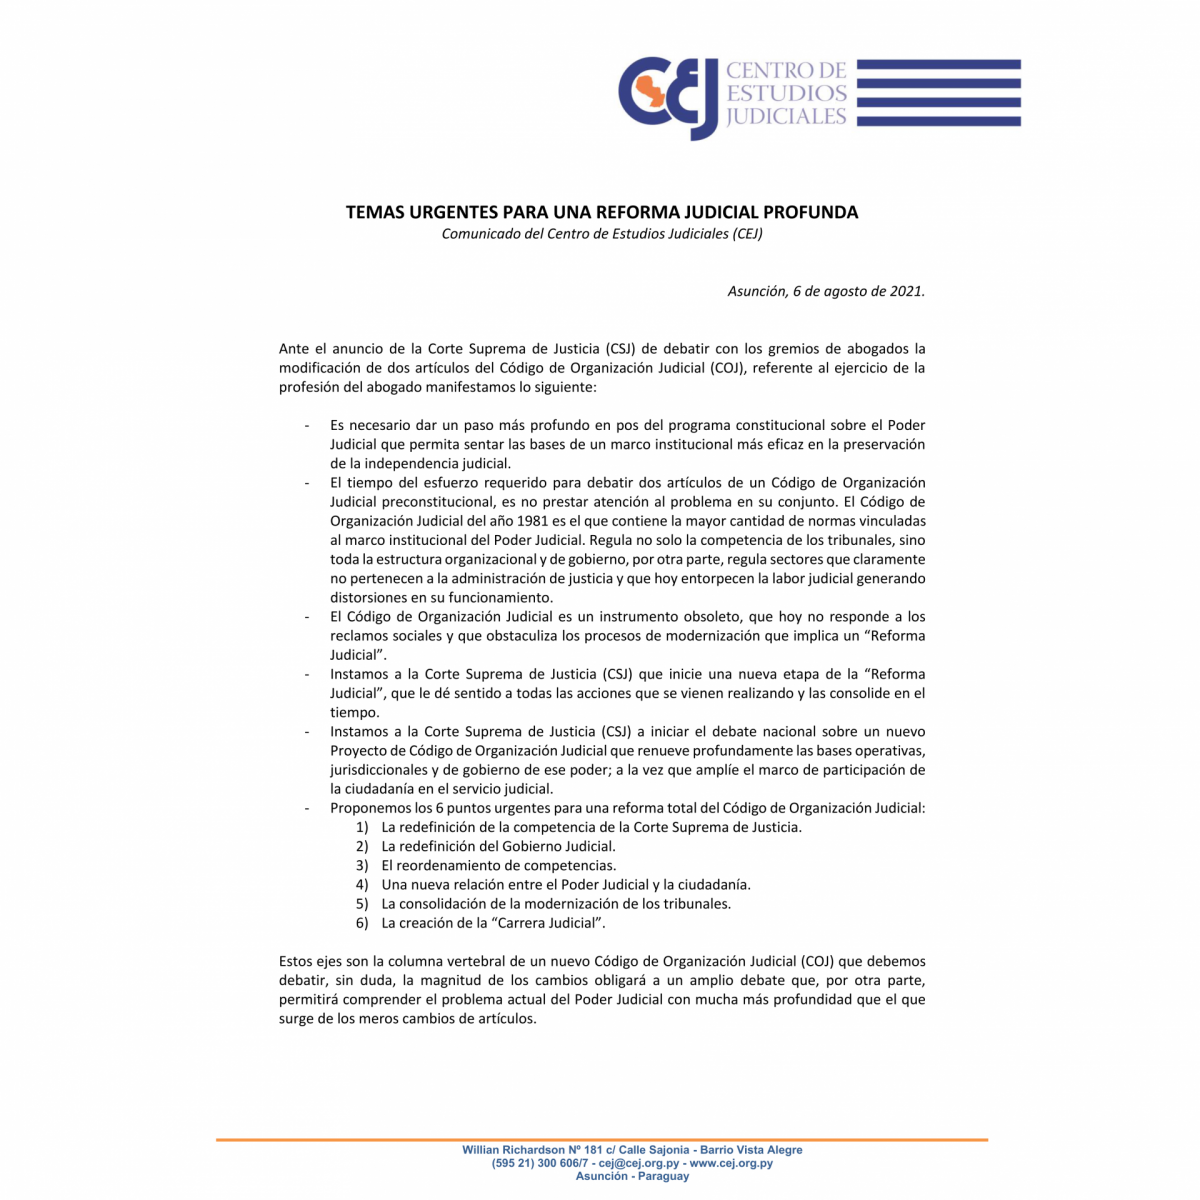 El CEJ propone una reforma total de Código de Organización Judicial.